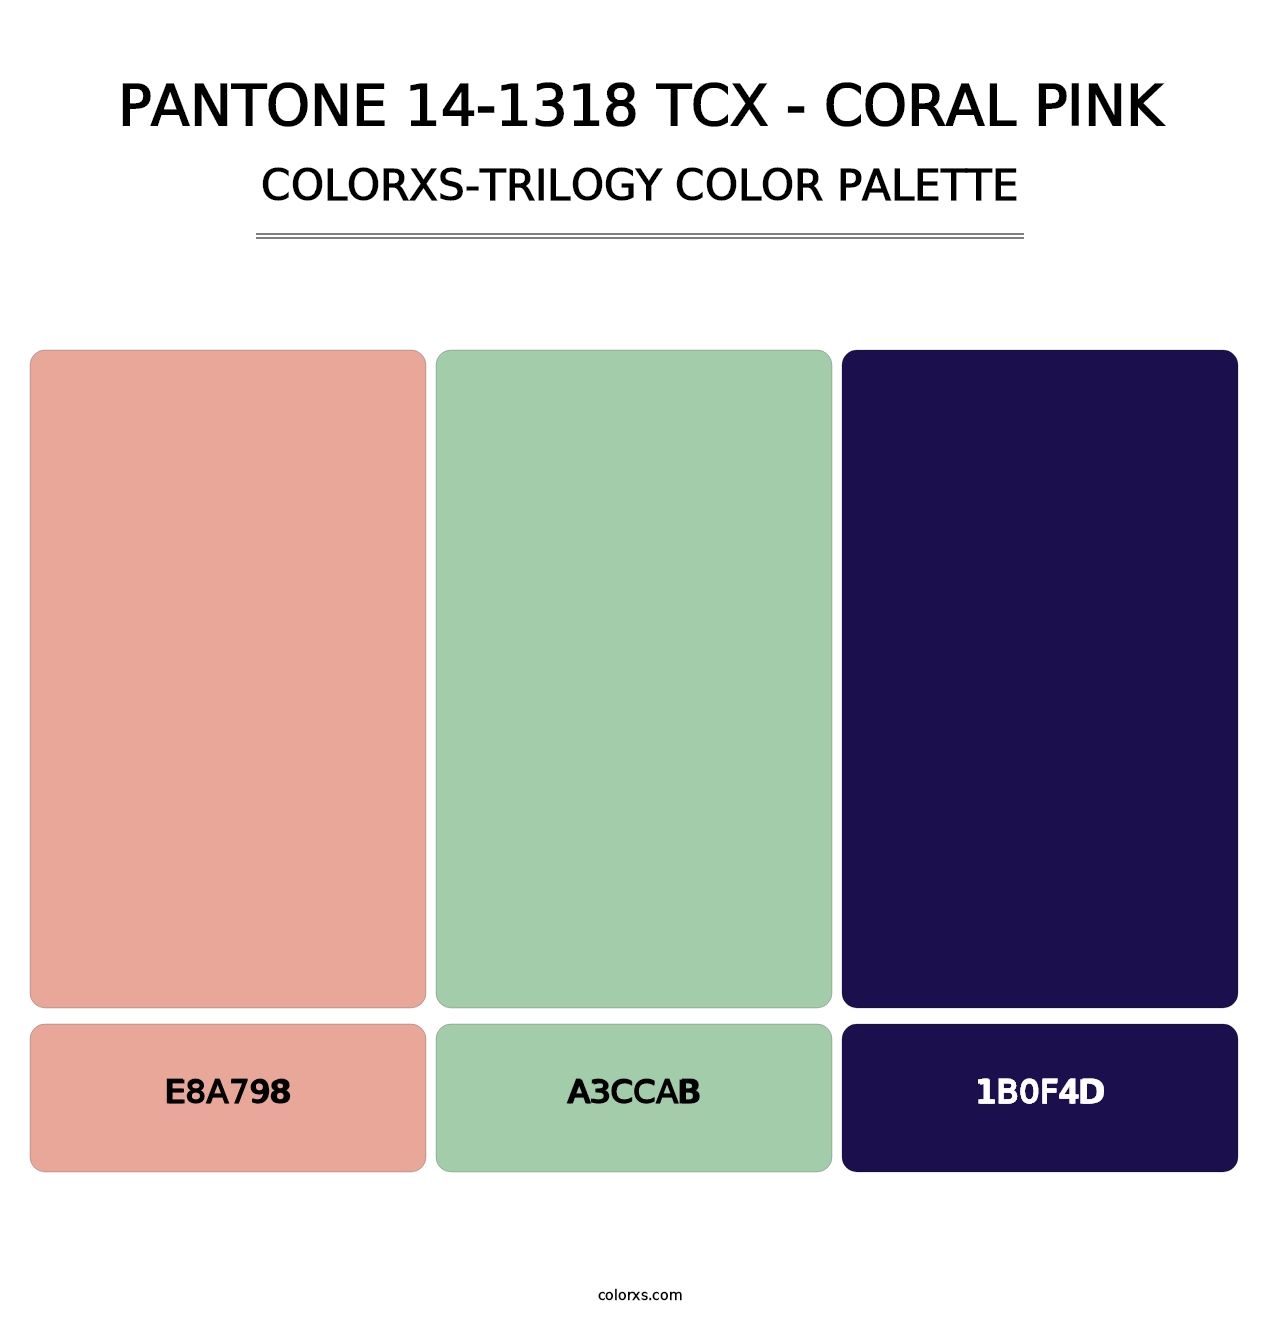 PANTONE 14-1318 TCX - Coral Pink - Colorxs Trilogy Palette